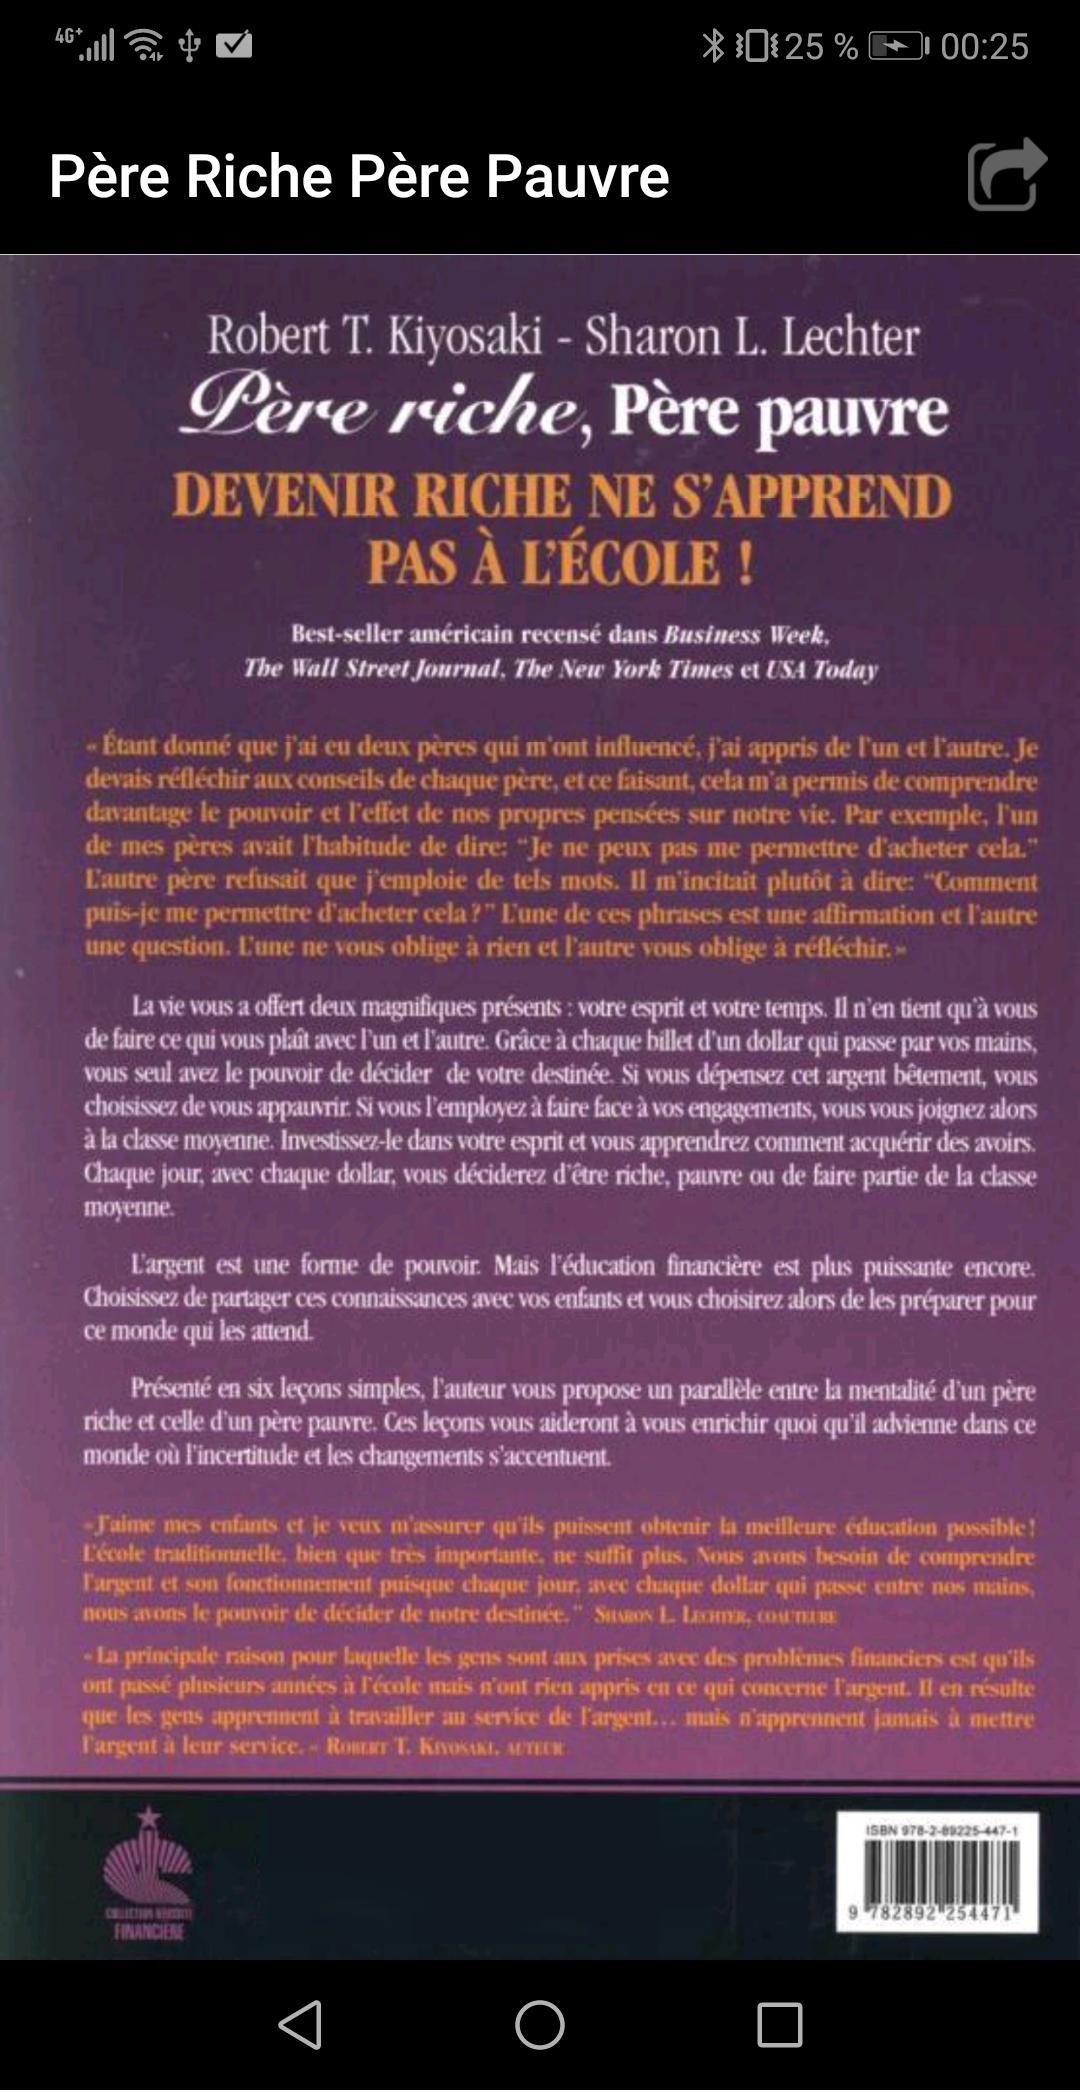 Livre Père Riche Père Pauvre for Android - APK Download